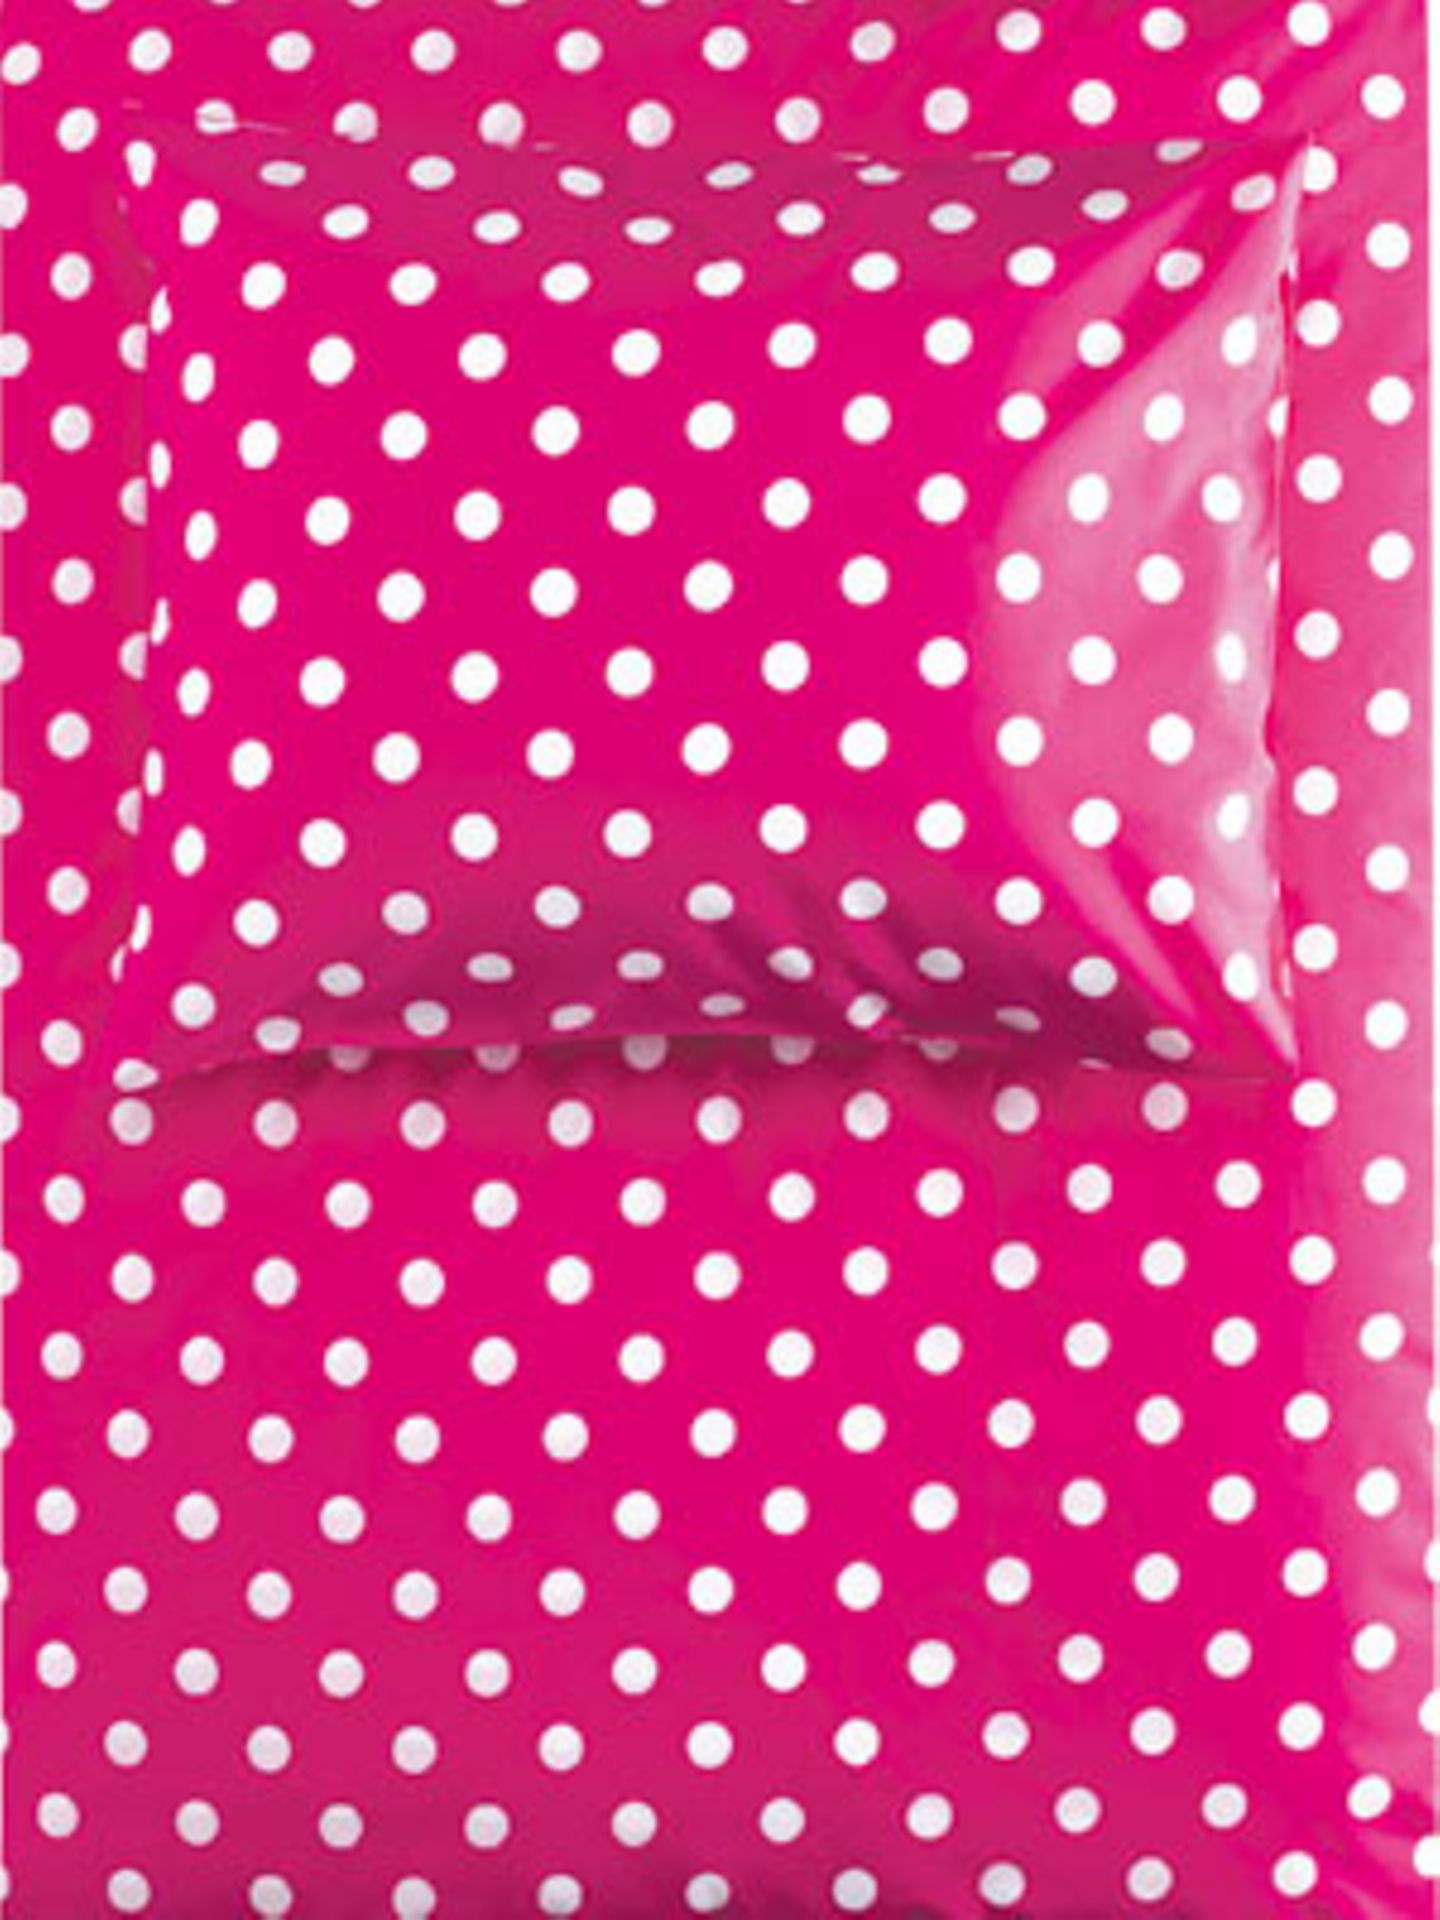 H&M Home    Pink-weiß gepunktete Bettwäsche für süße Träume aus der Herbstkollektion 2009 von H&M Home. Bettbezug: 135x200 cm, Kissen: 80x80 cm, aus 100% Baumwolle, um 10 Euro. Erhältlich ab August. Über www.hm.com